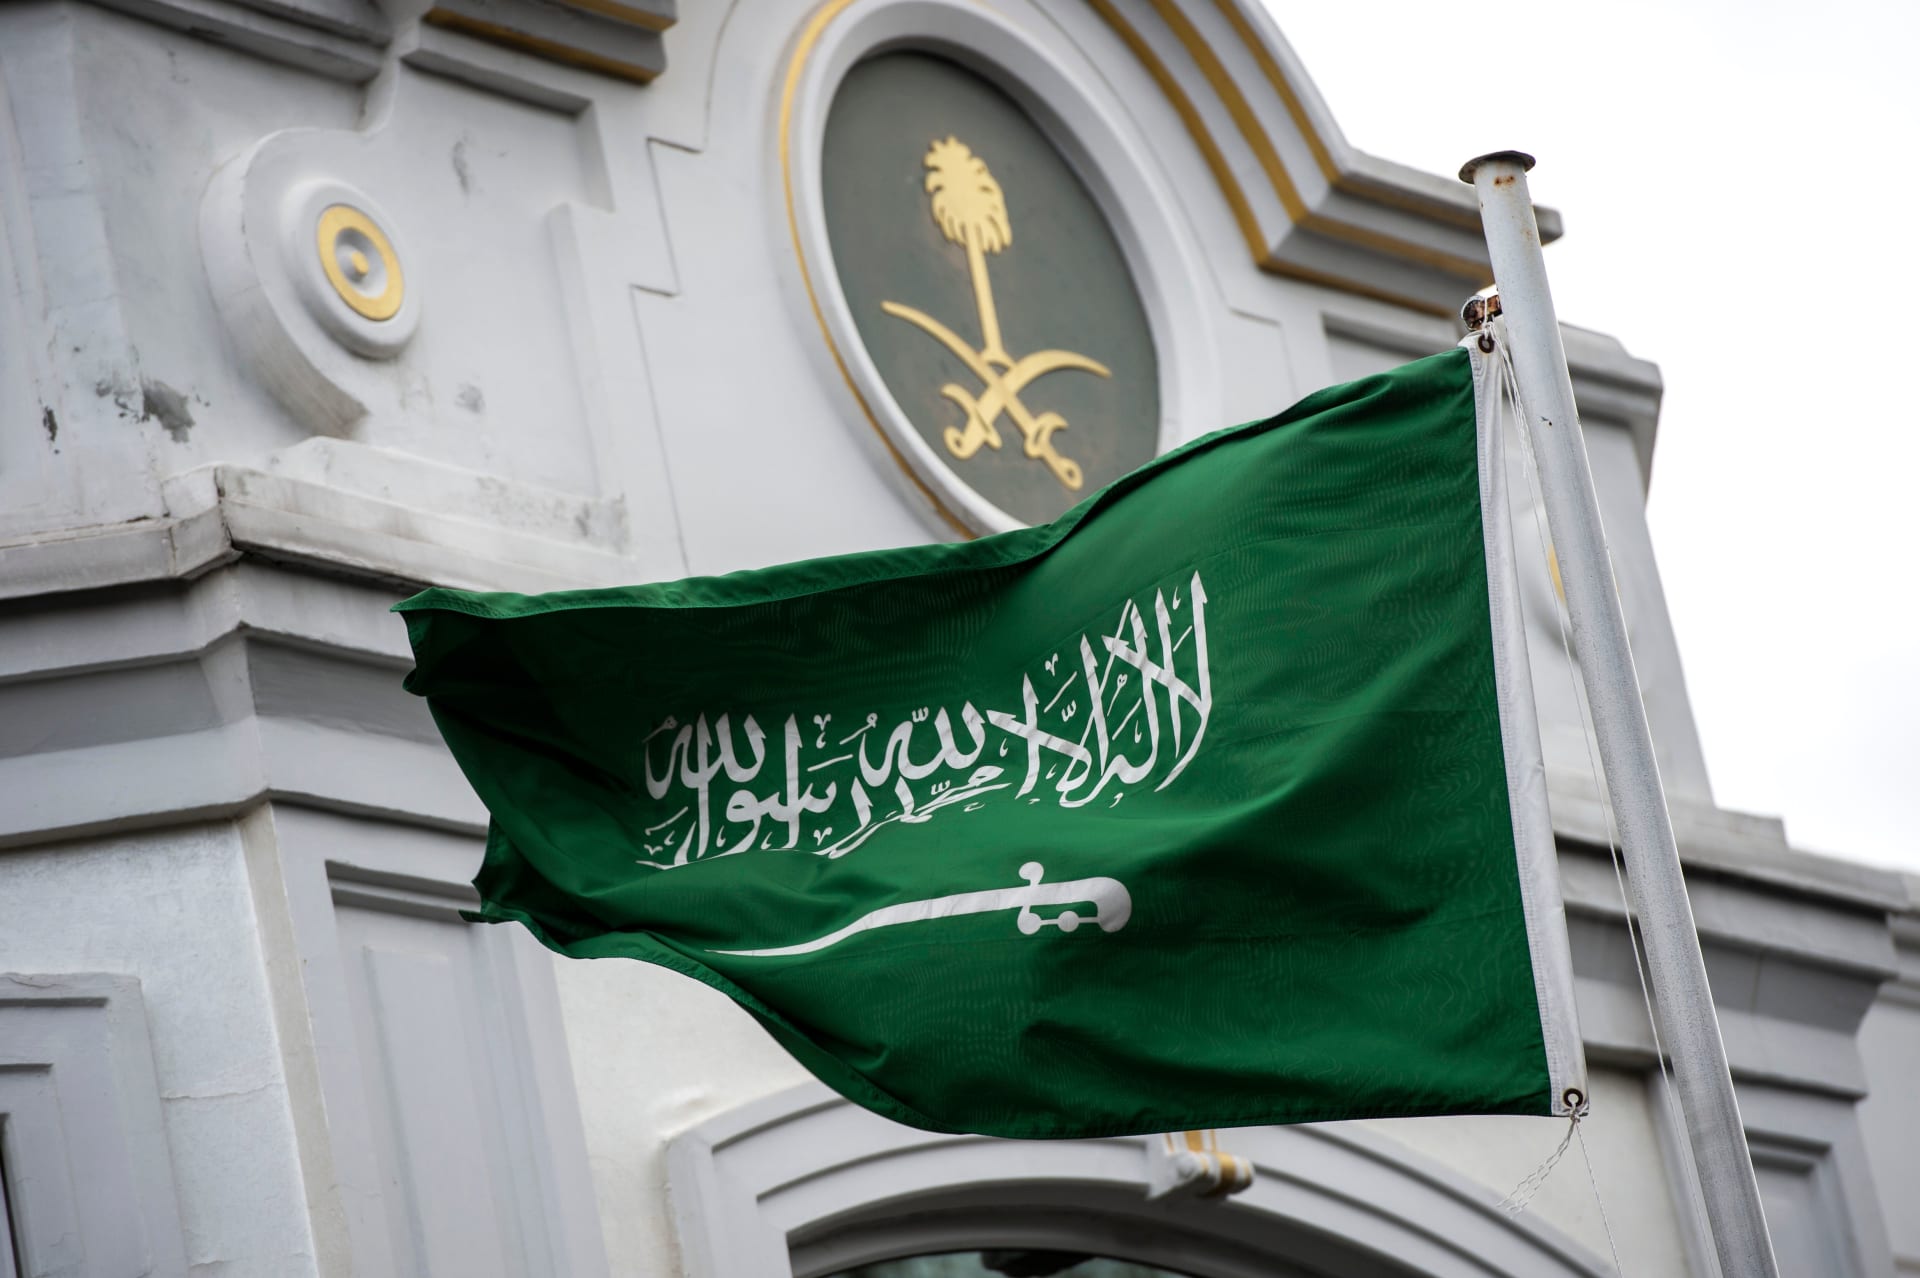 هيئة الرقابة ومكافحة الفساد بالسعودية تلقي القبض على عقيد ومقدم وعسكريين آخرين بتهم "فساد"